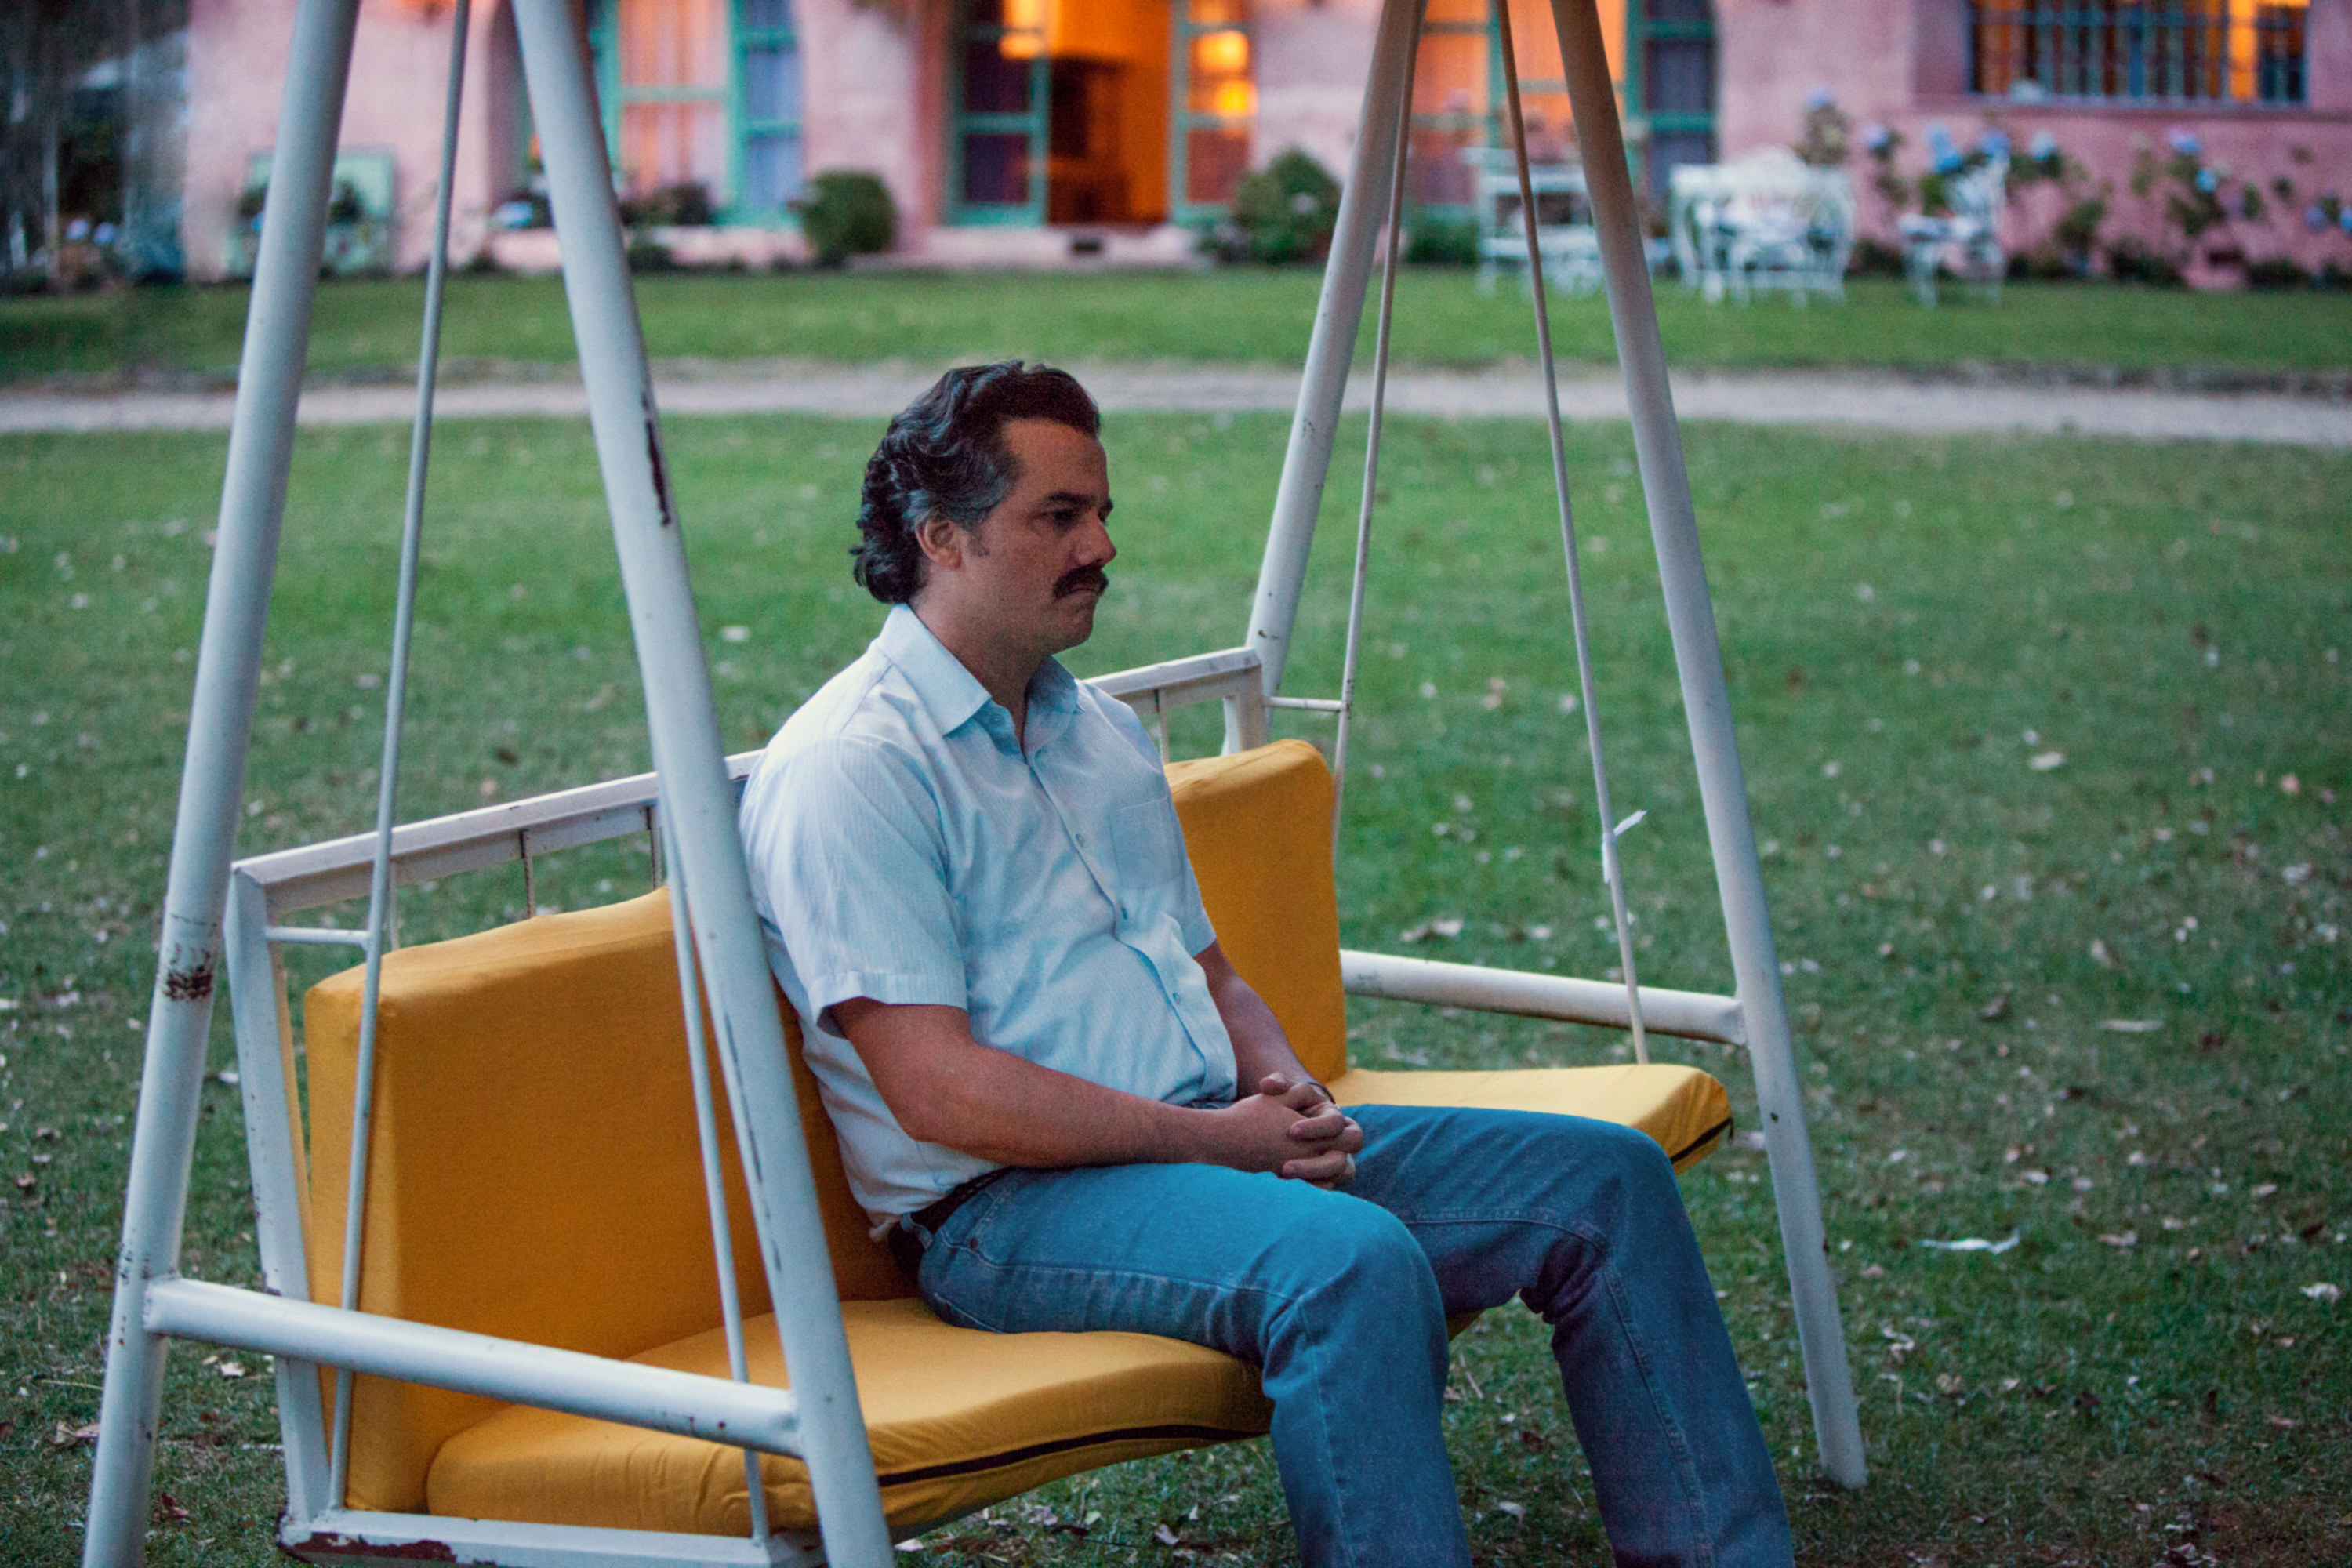 Moura as Escobar on a swing